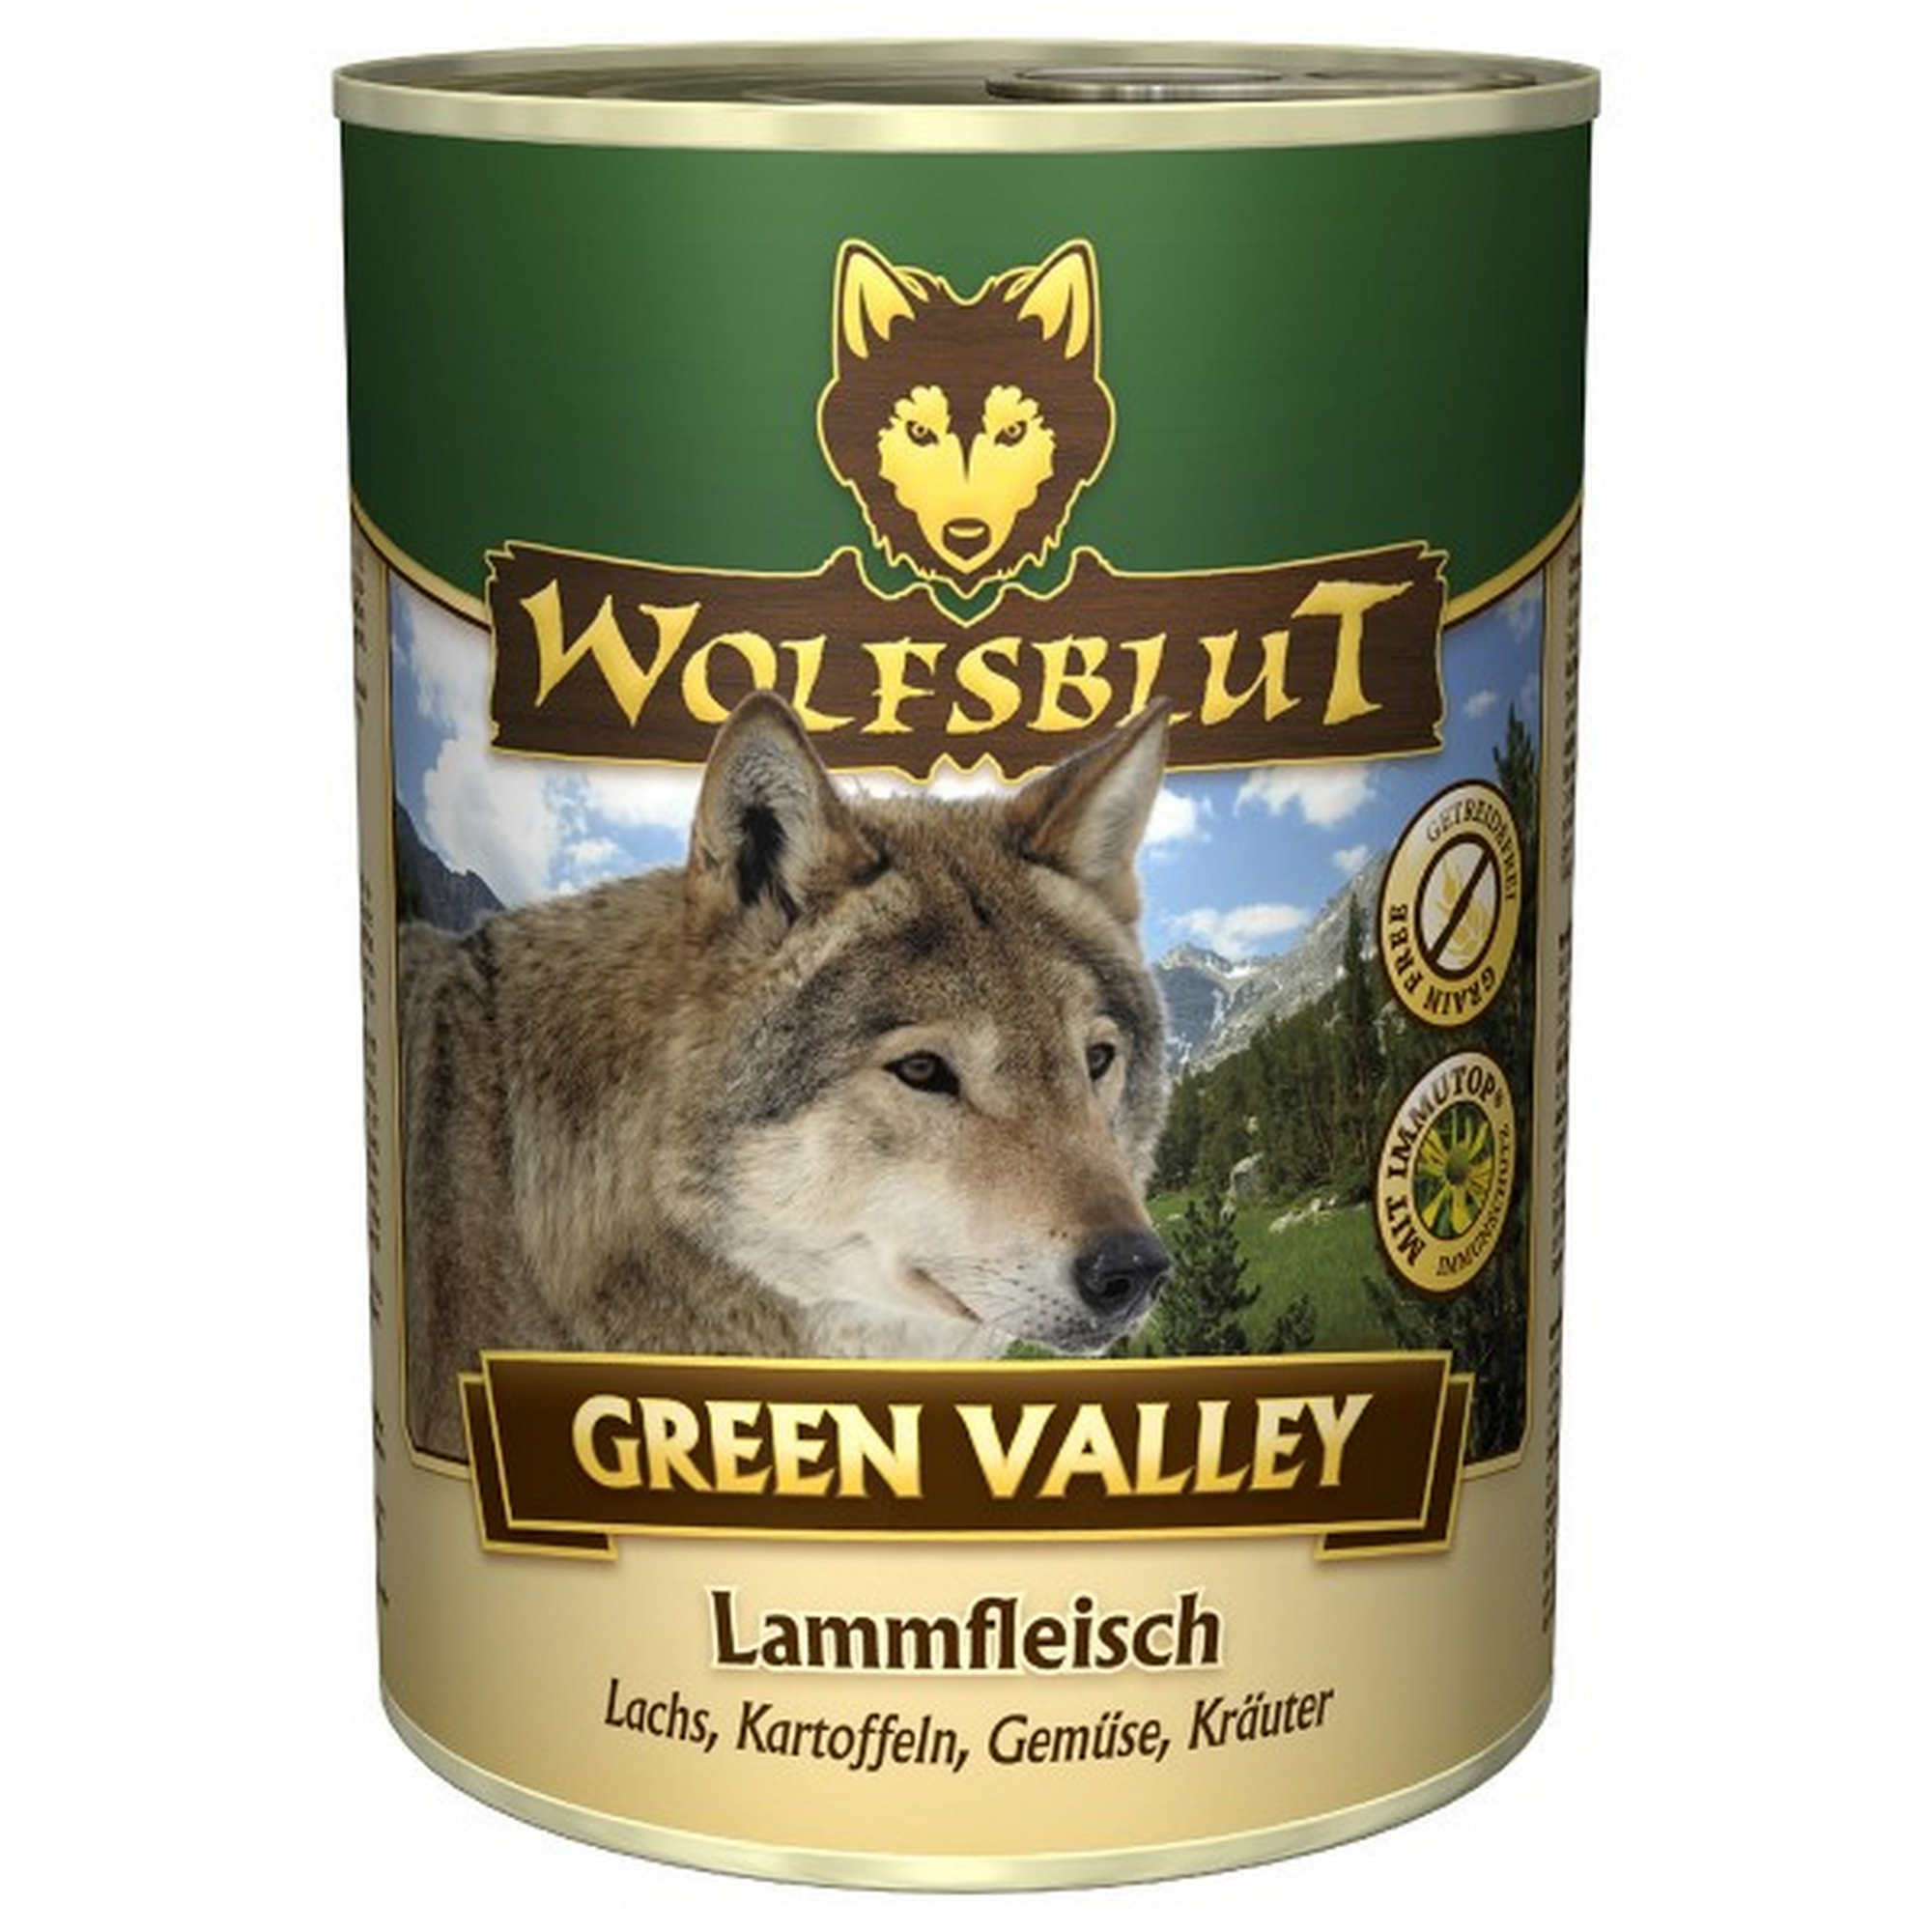 Hundenassfutter 'Green Valley' Adult/Senior Lammfleisch 395 g + product picture